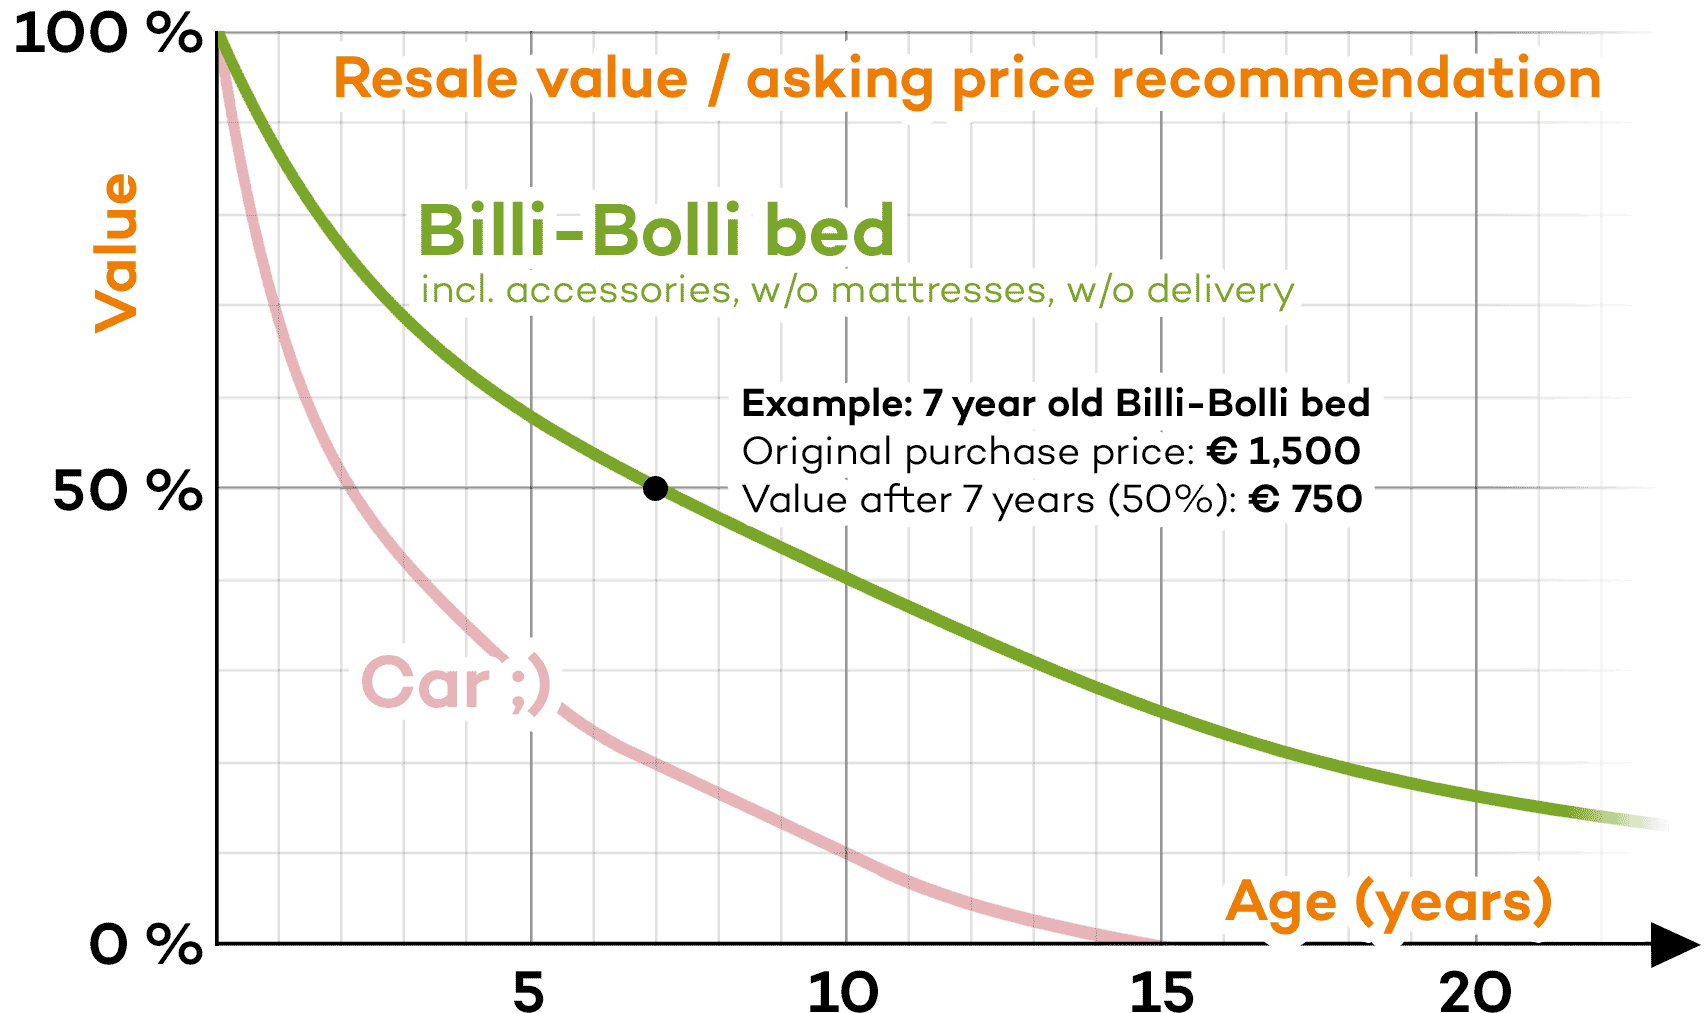 Rendiment/preu de venda recomanat per als llits Billi Bolli